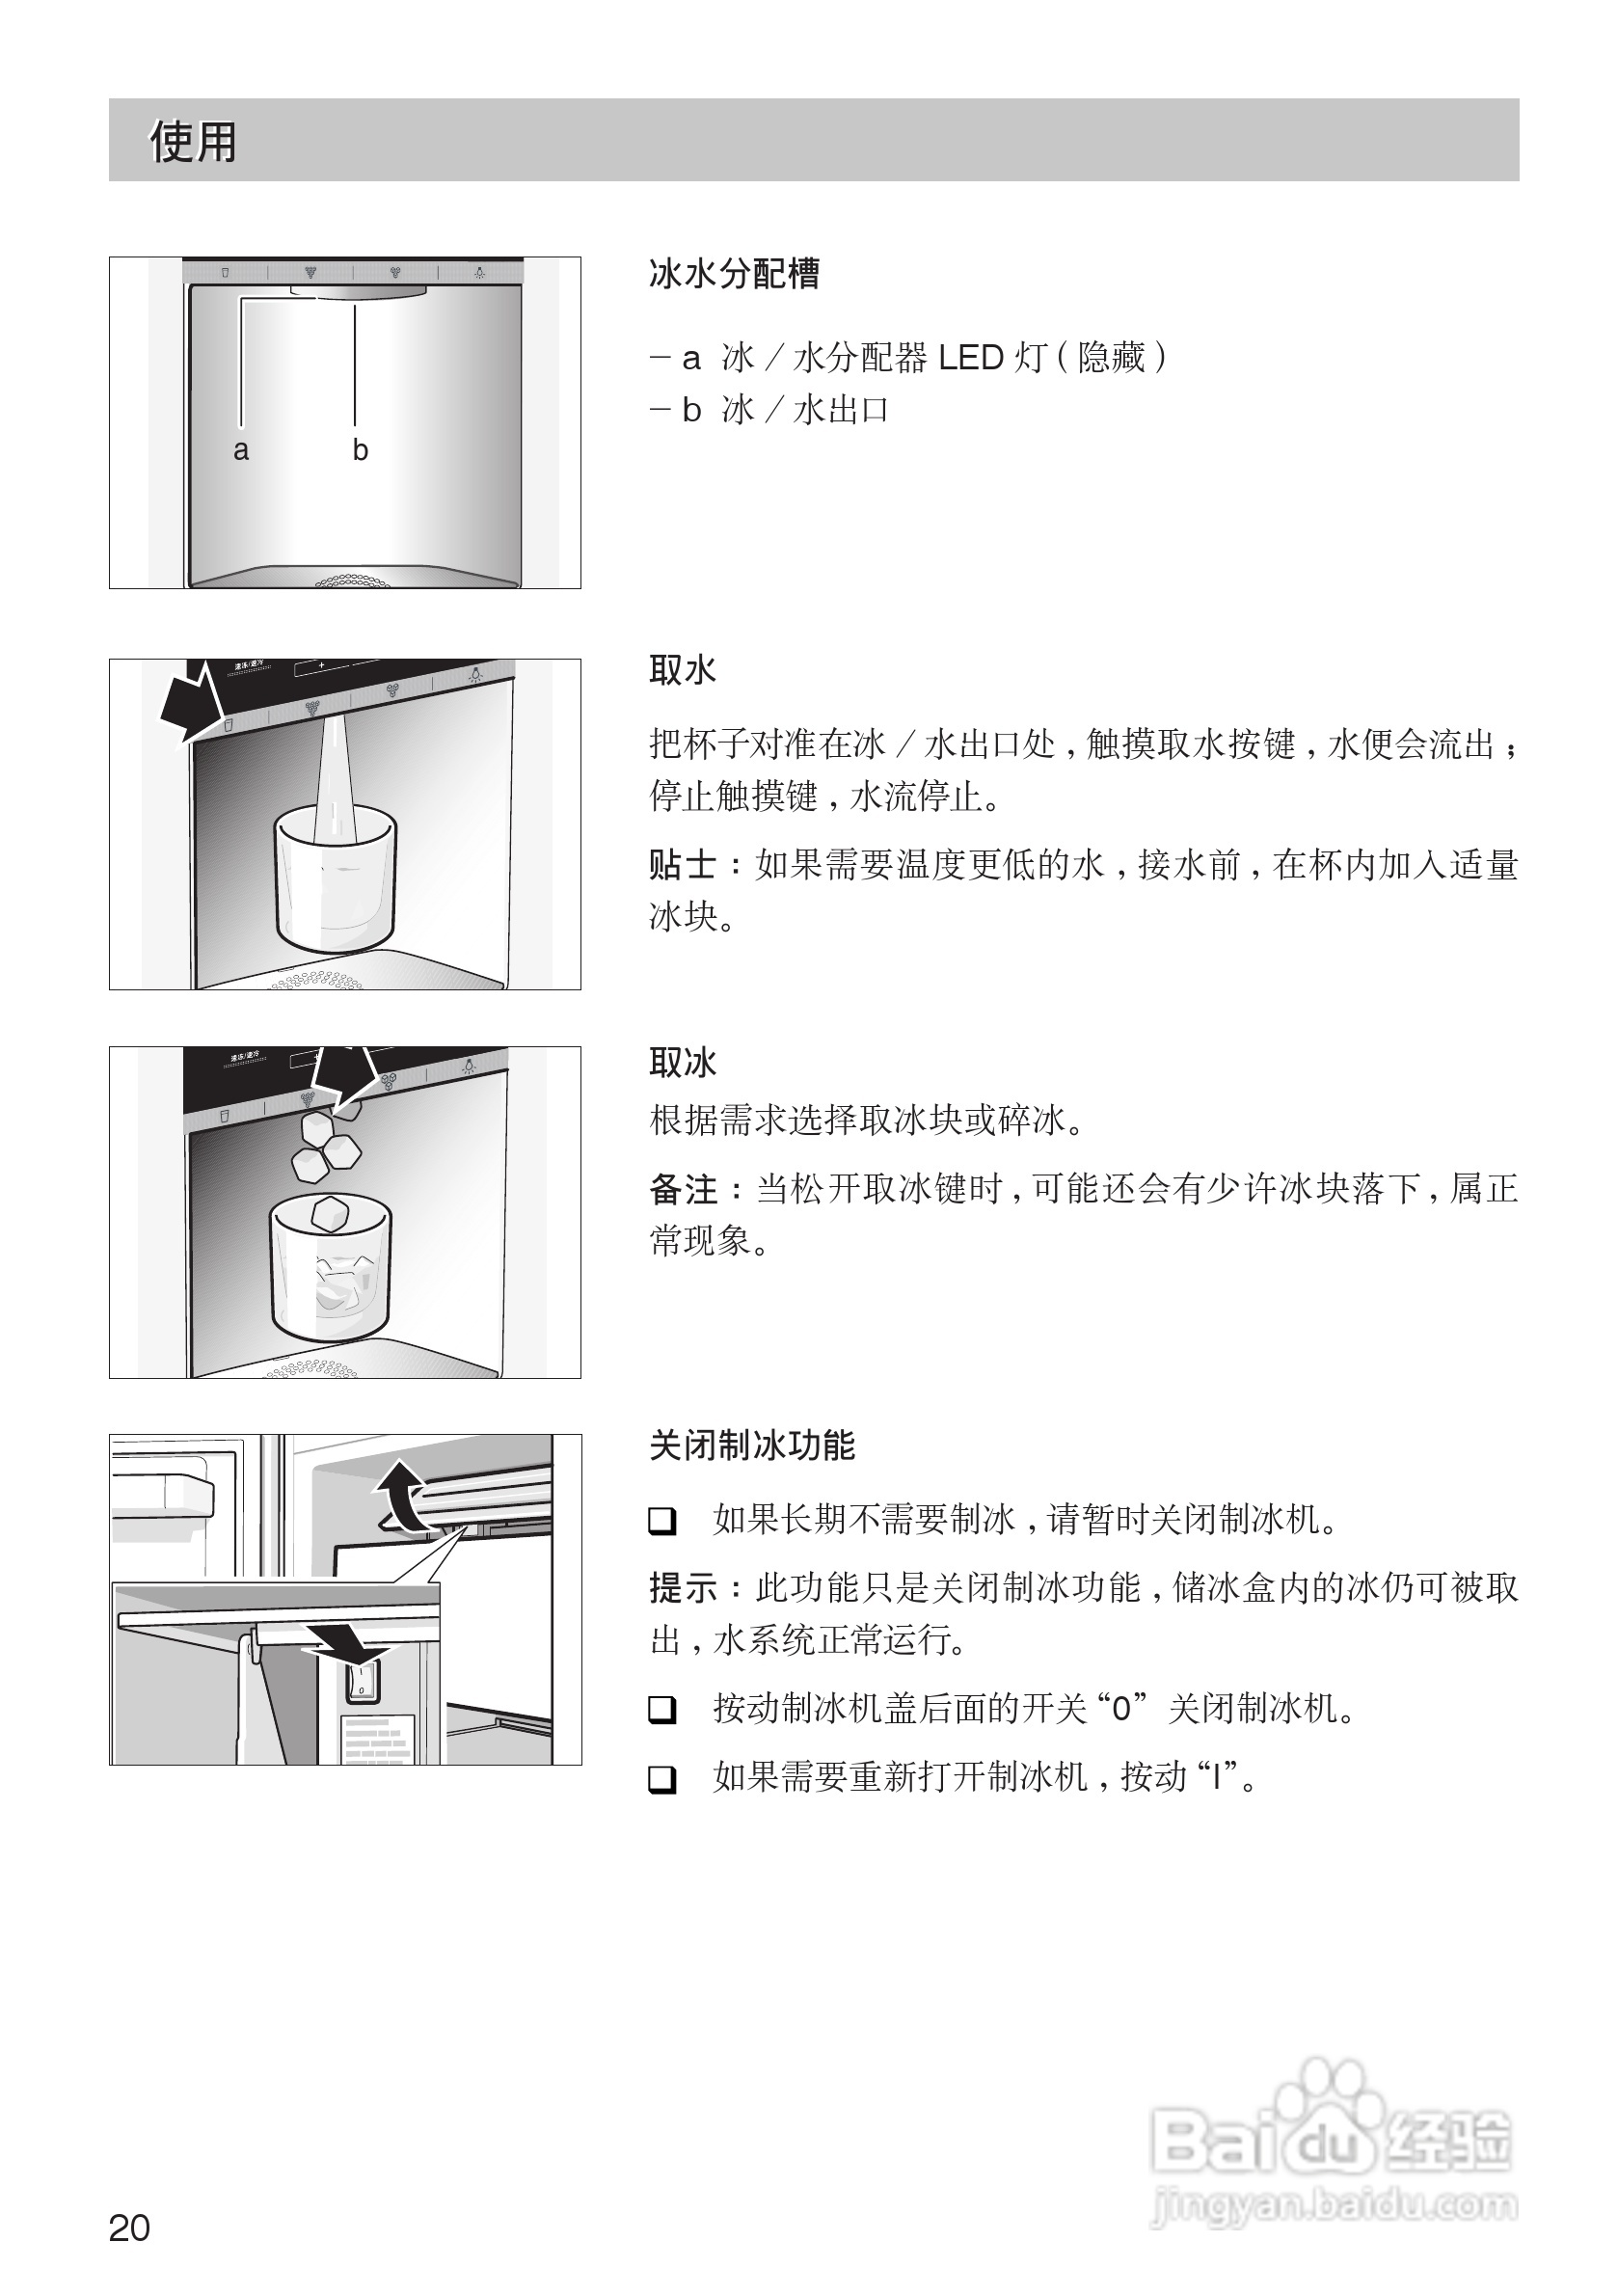 西门子ka63dv21ti电冰箱使用说明书:[2]